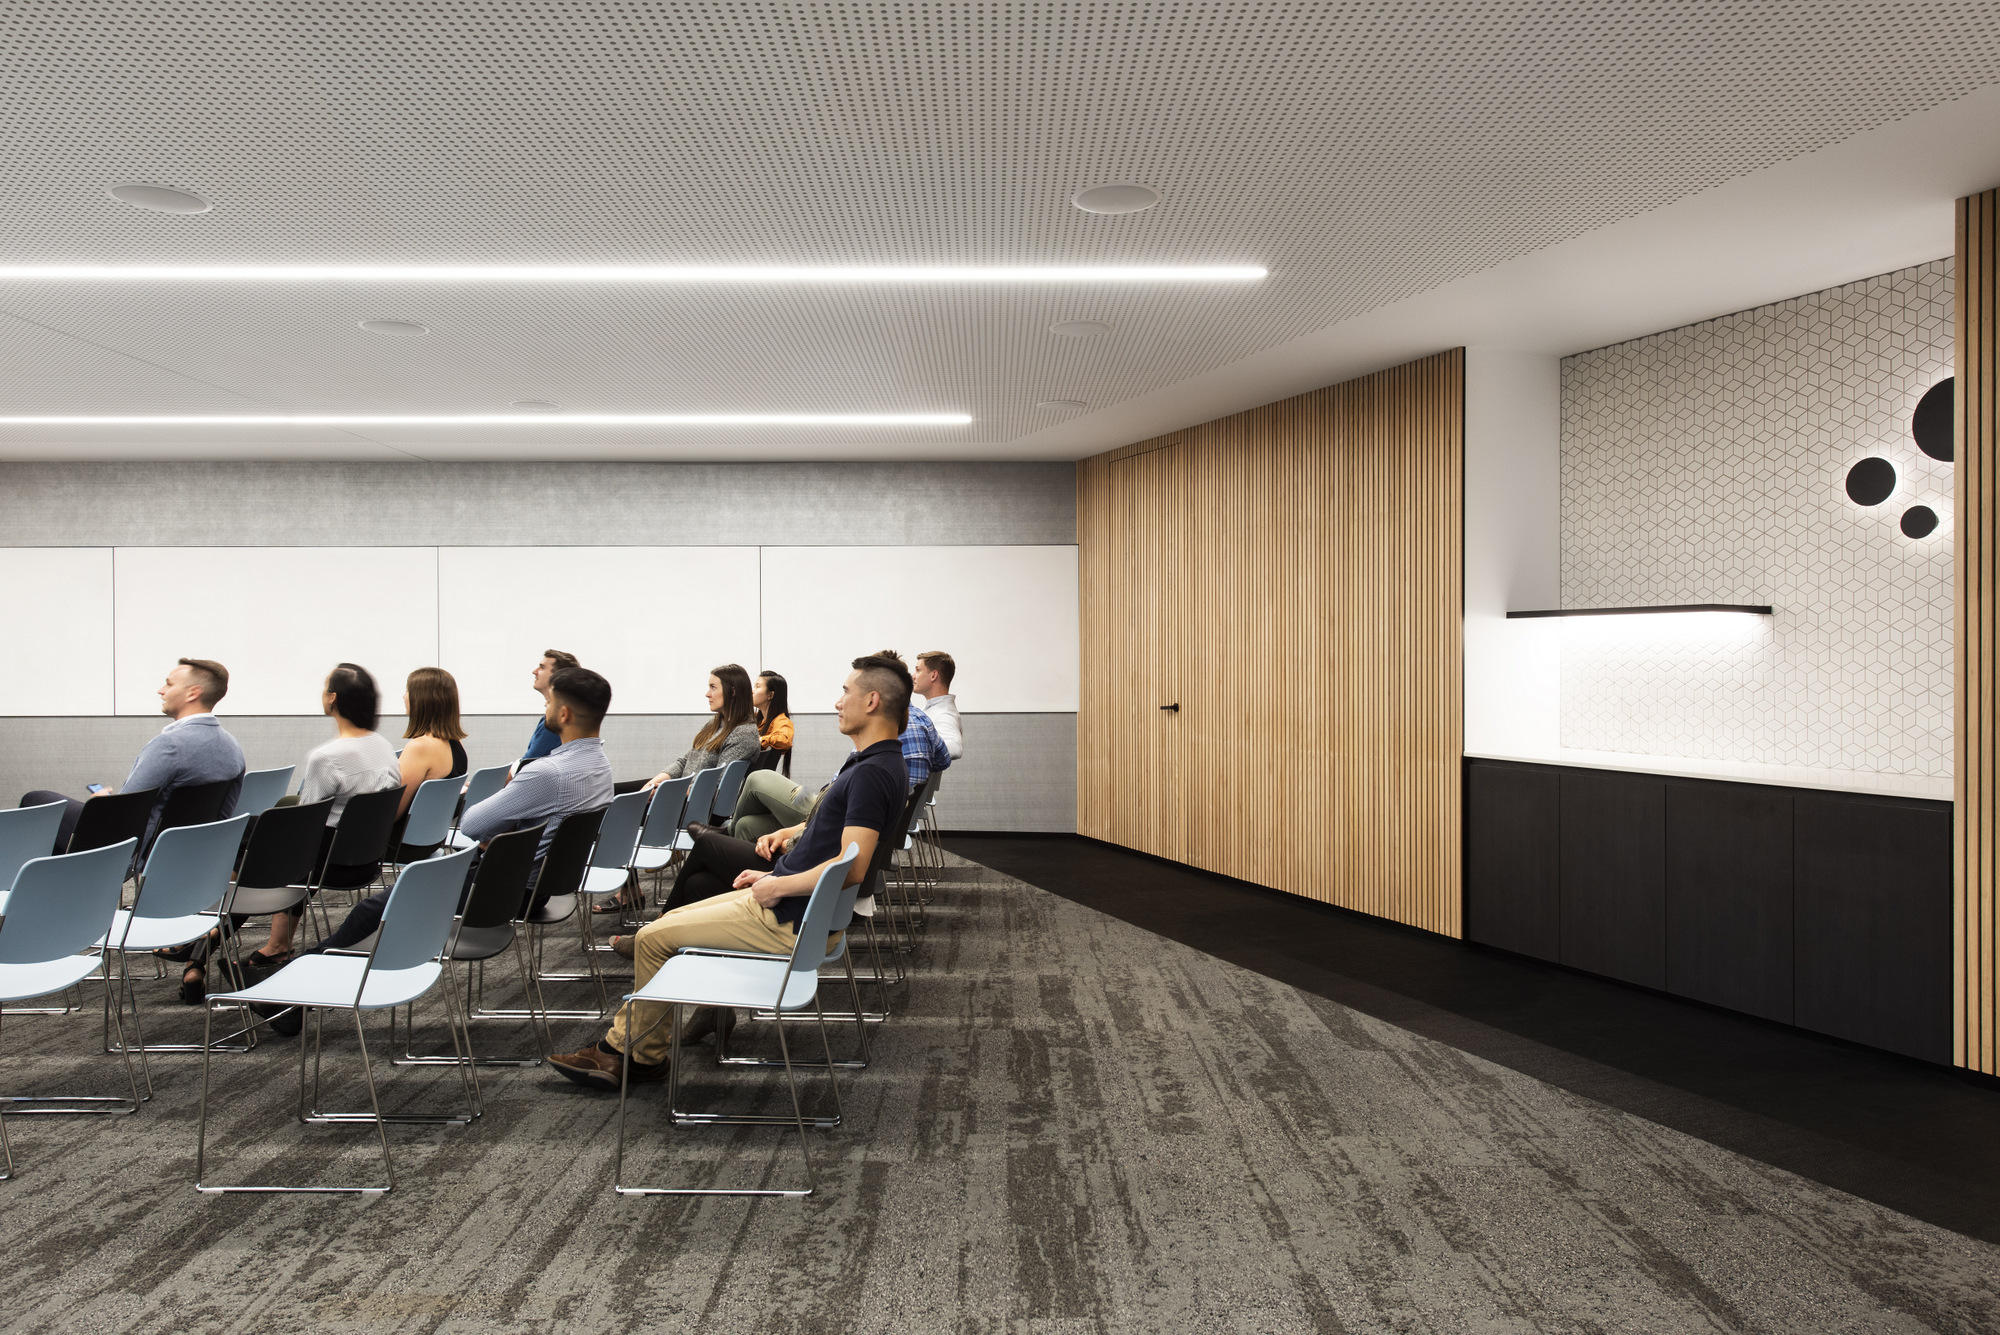 Microsoft(マイクロソフト)のオフィス - メルボルン, オーストラリアの会議室/ミーティングスペース